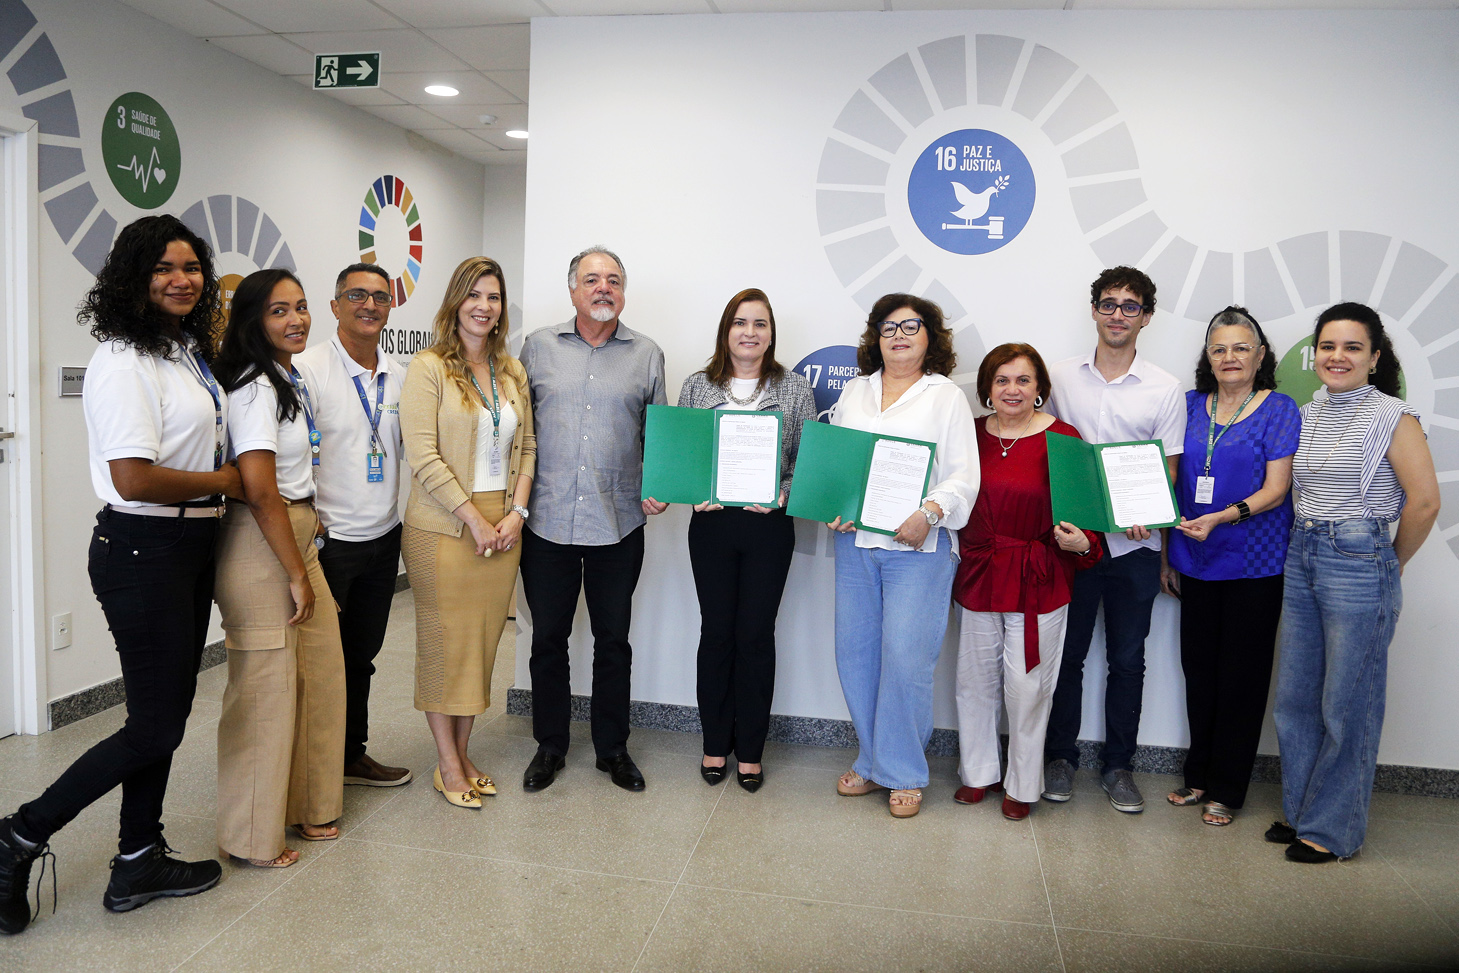 Assinatura do novo acordo de cooperação com a Agência de Desenvolvimento do Estado do Ceará (Adece)